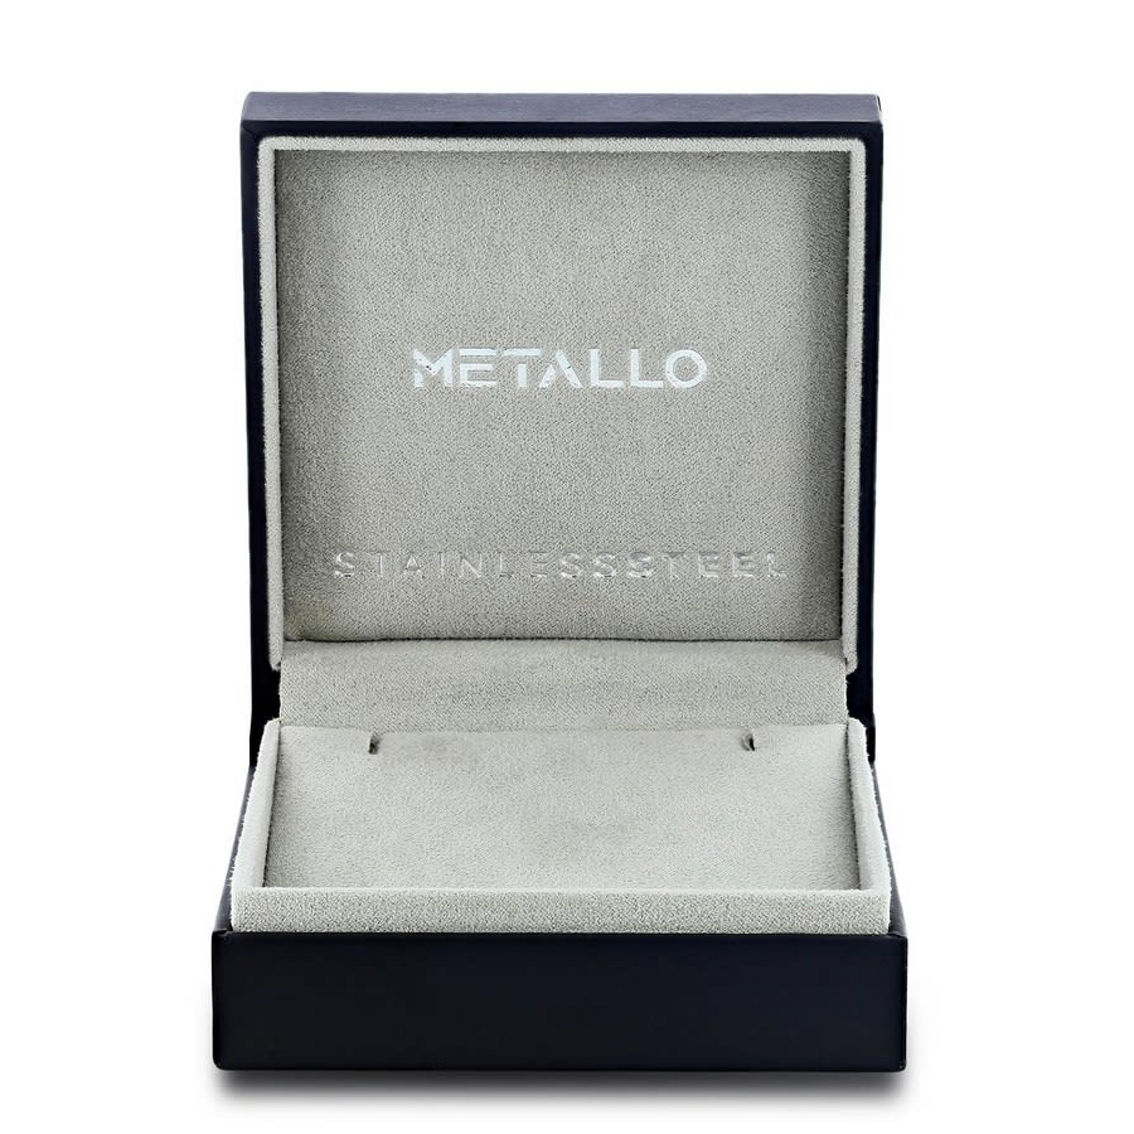 Metallo Stainless Steel Oxidized Dragon Bracelet - Image 4 of 4